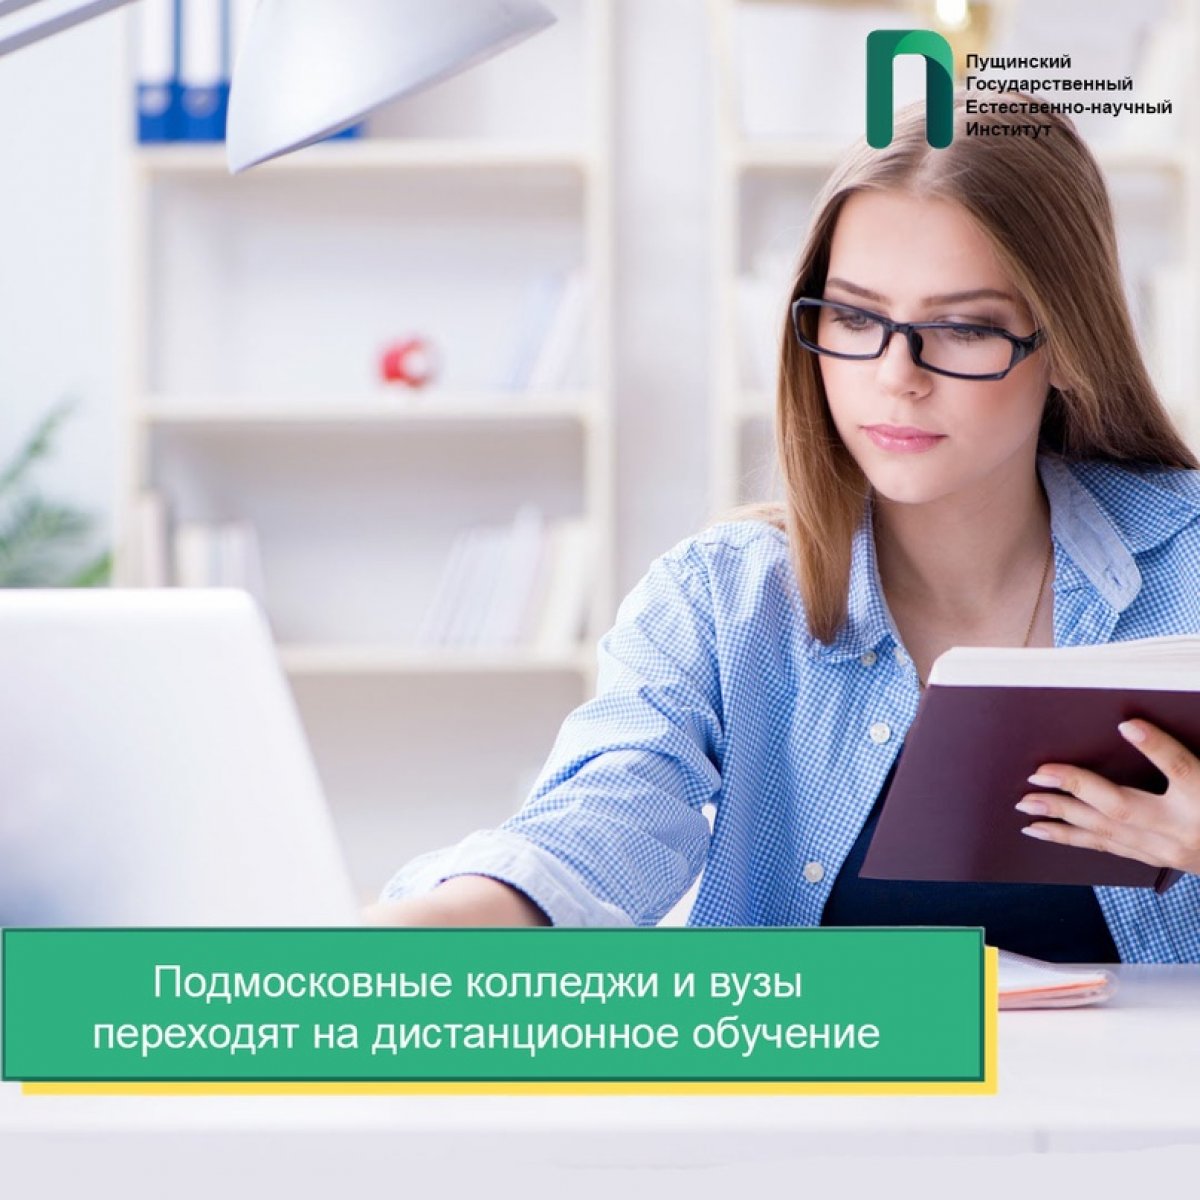 На основании Постановления Губернатора Московской области 502-ПГ от 09.11.2020 с 16 ноября вузы и колледжи переходят на дистанционное обучение.